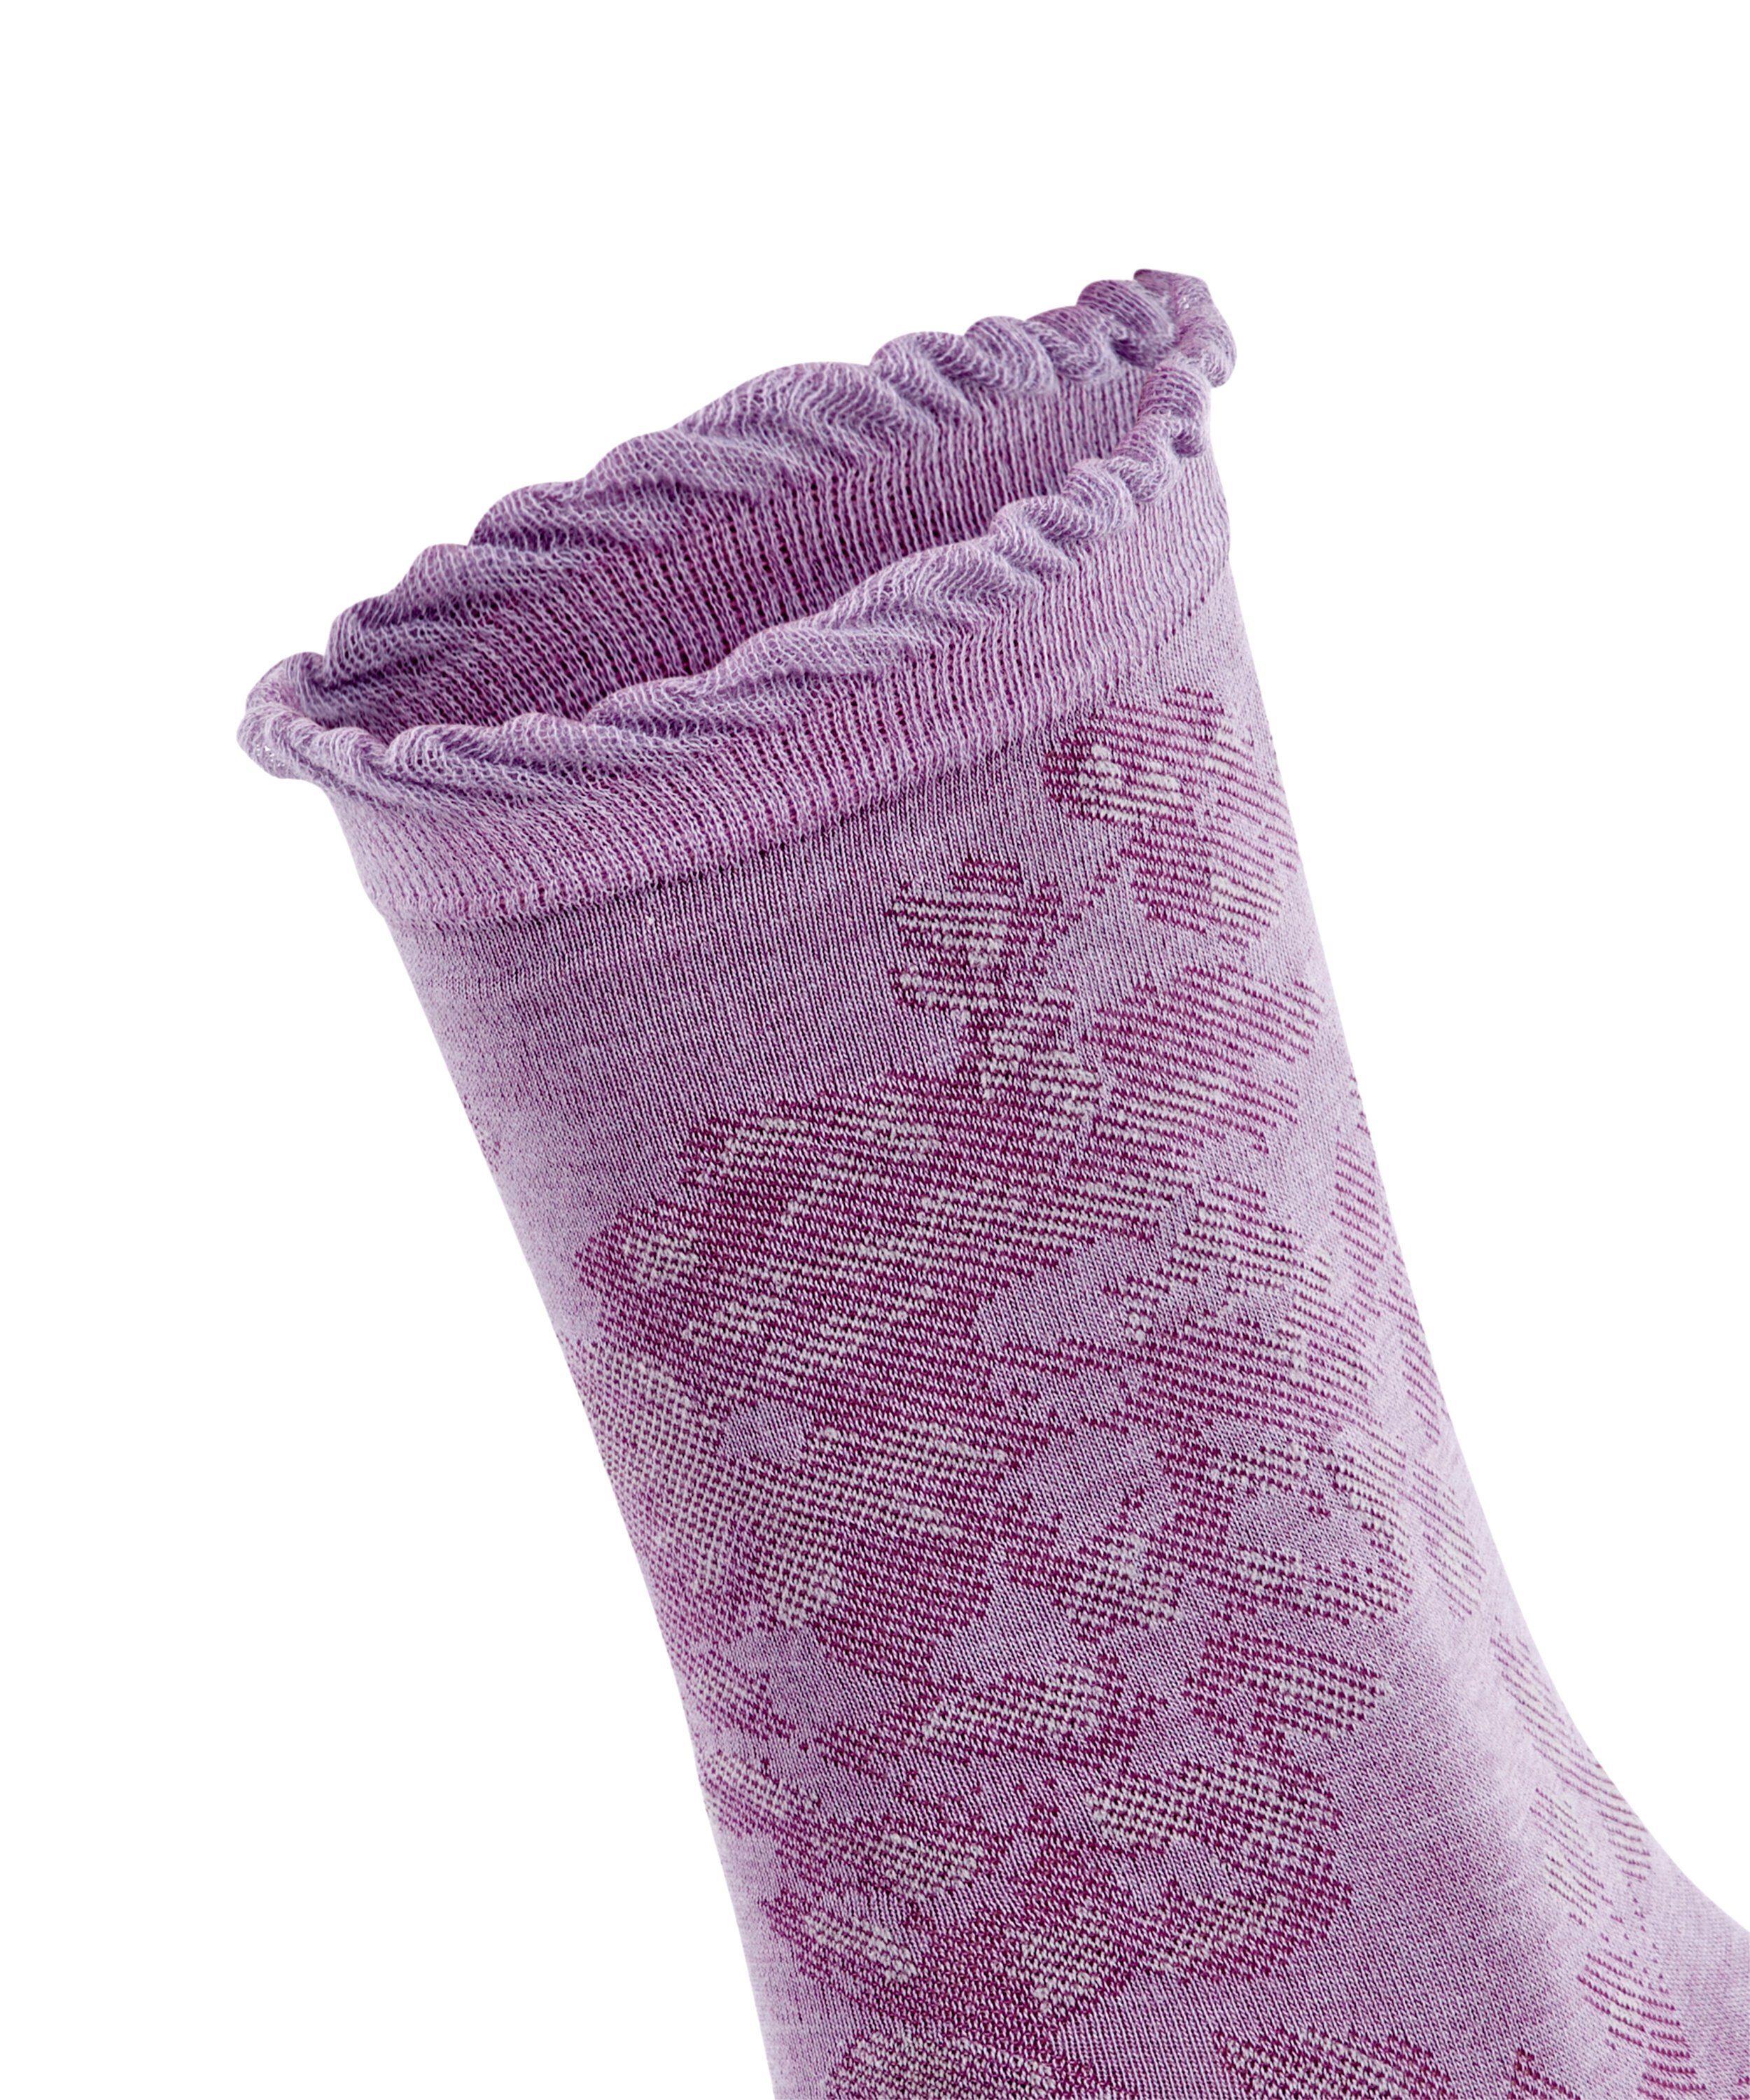 Gentle (8736) FALKE (1-Paar) lavender Woman Socken